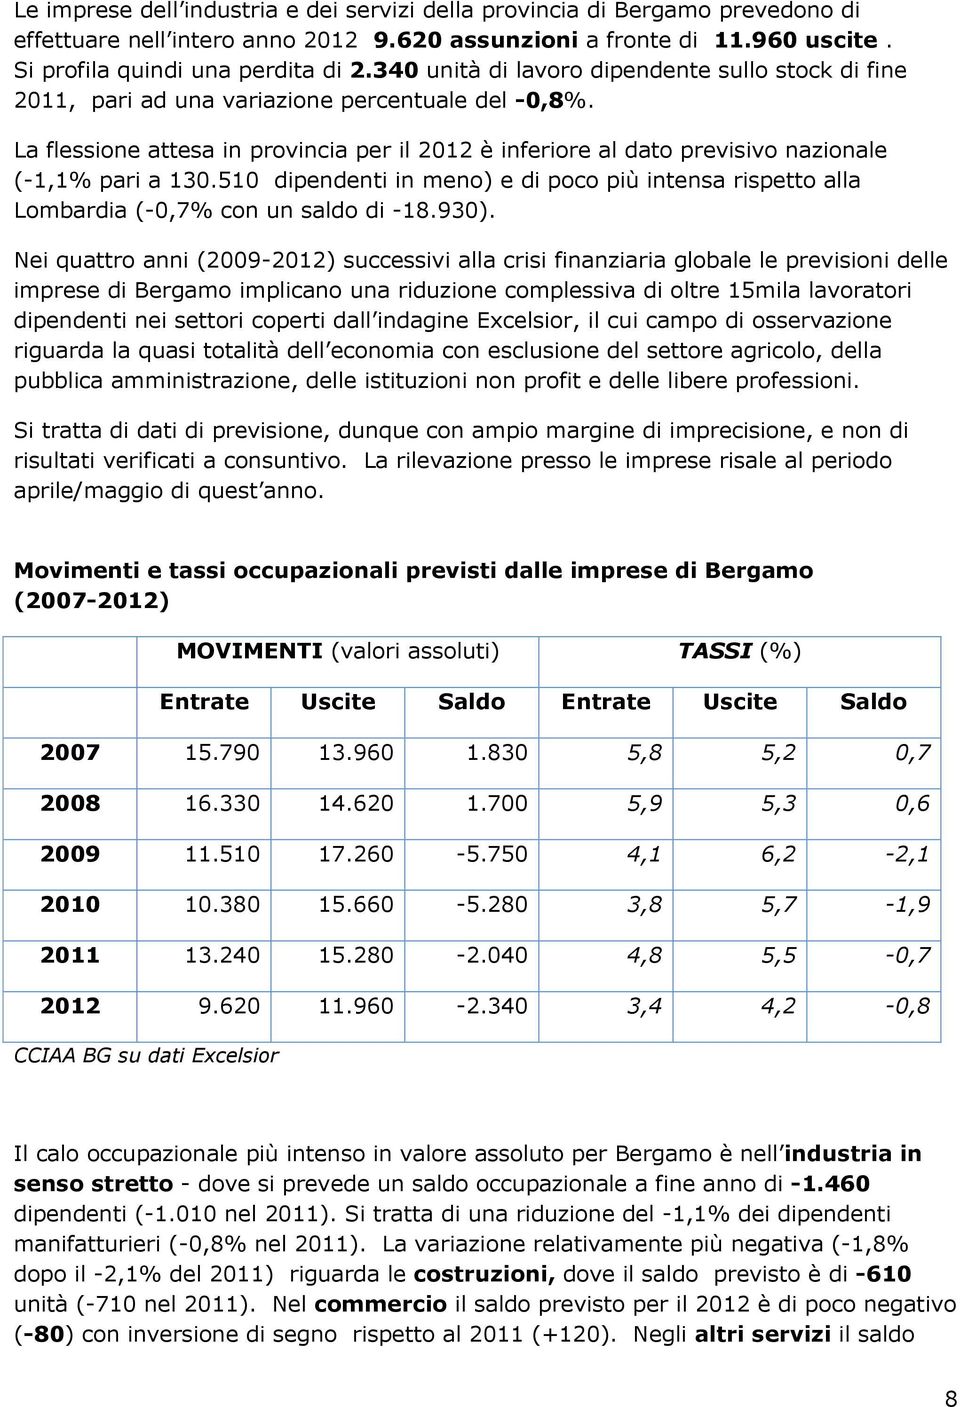 La flessione attesa in provincia per il 2012 è inferiore al dato previsivo nazionale (-1,1% pari a 130.510 dipendenti in meno) e di poco più intensa rispetto alla Lombardia (-0,7% con un saldo di -18.